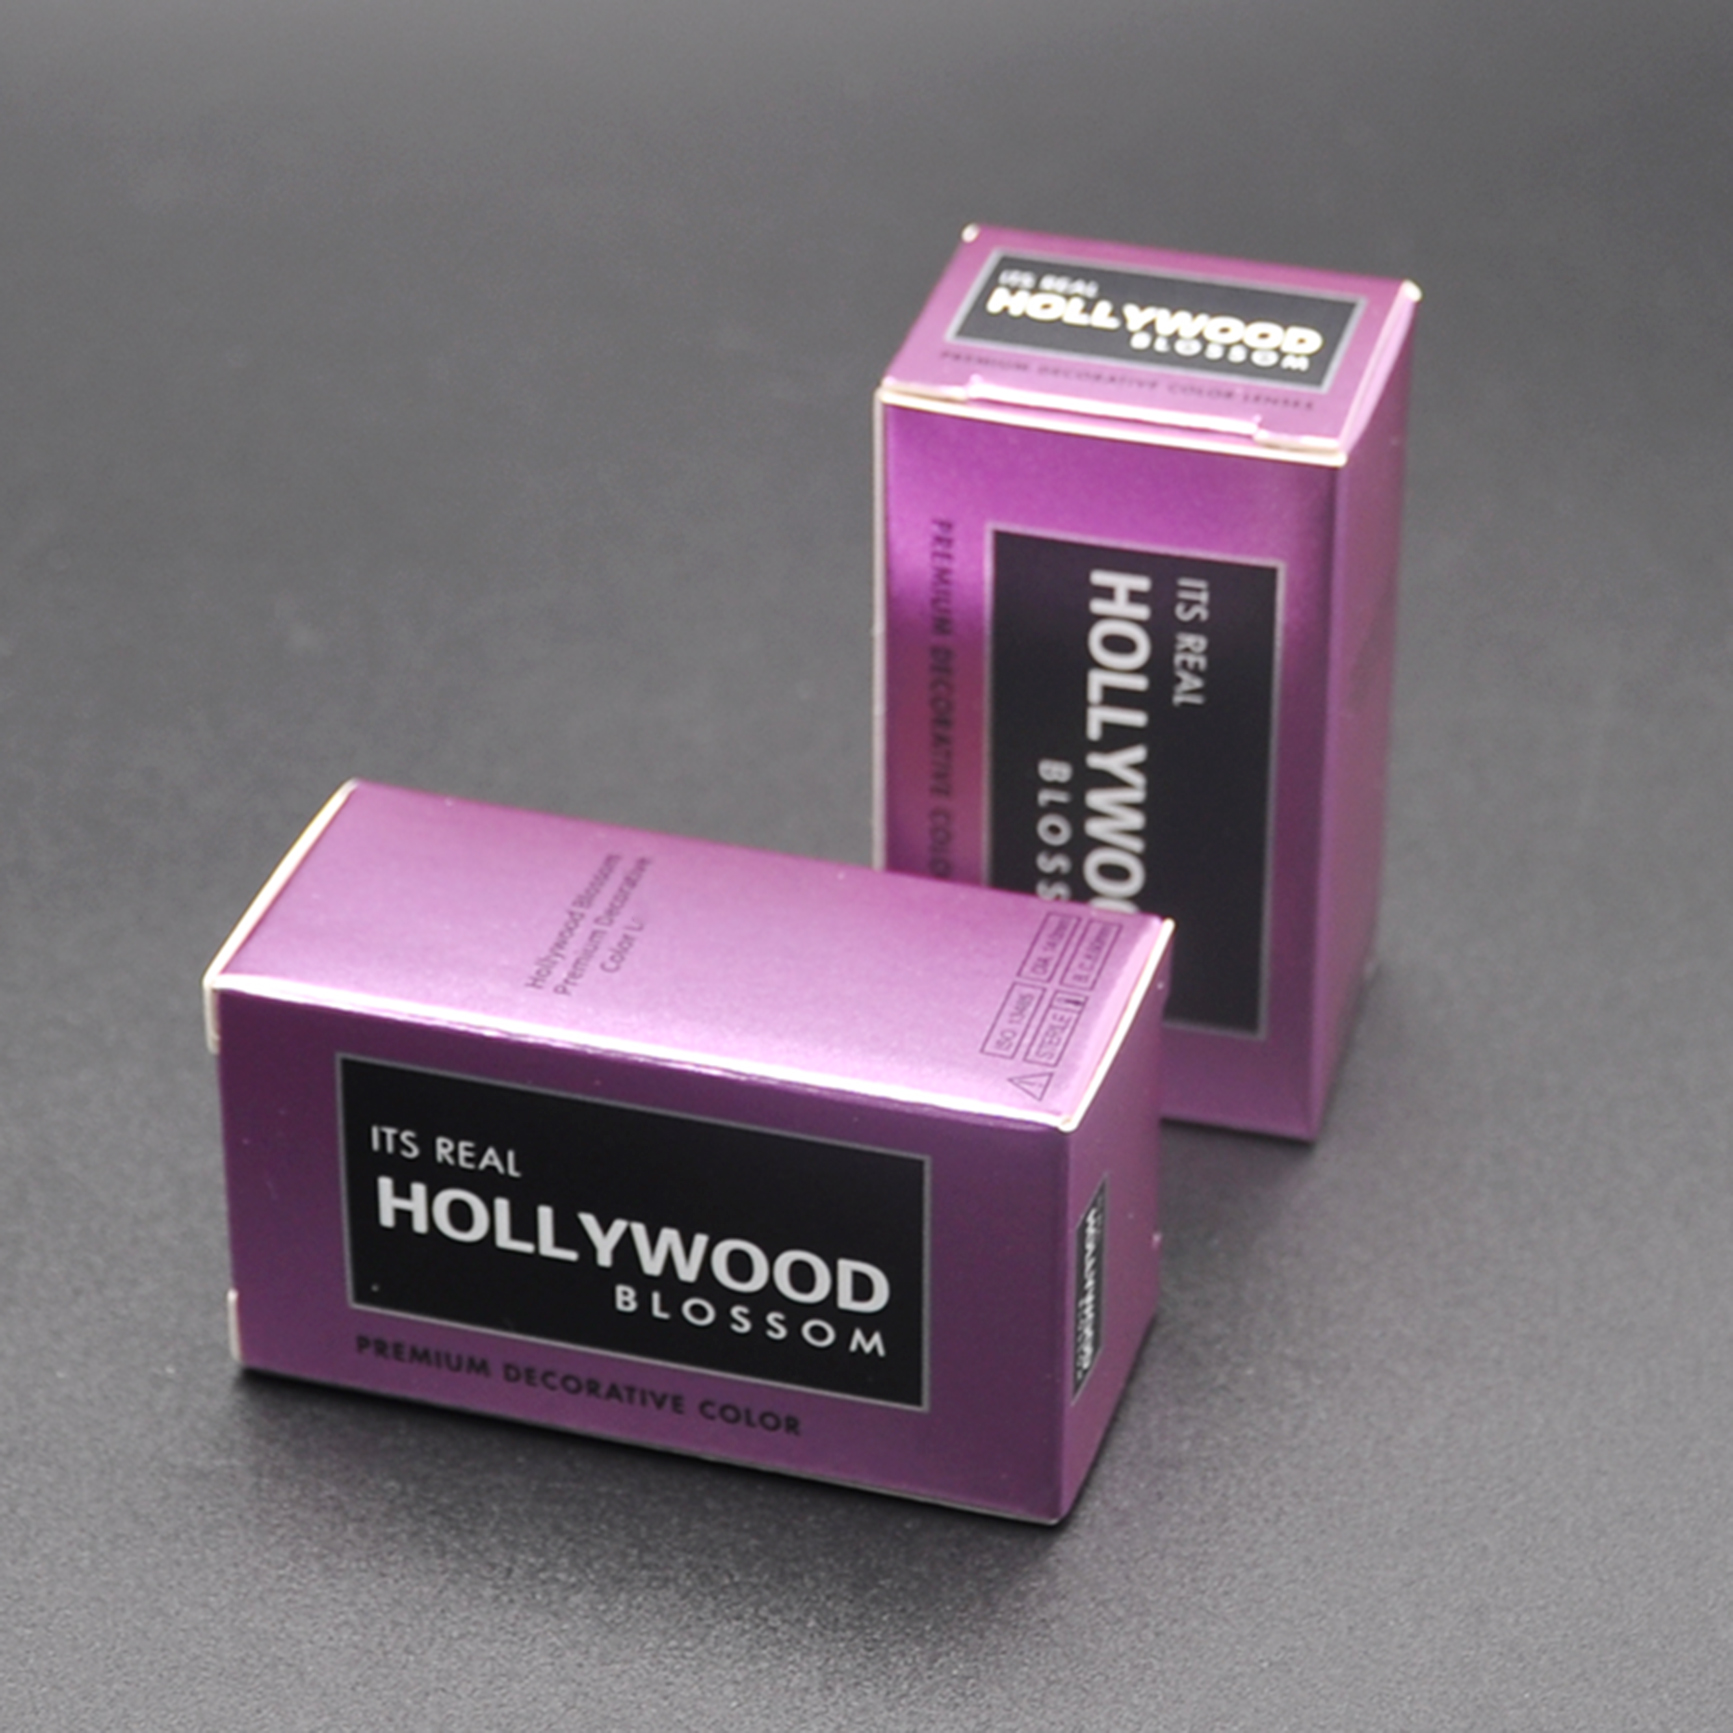 livraison gratuite boîte de magasin en gros pour hollywood 20 couleur contact avec les yeux son vrai contact de fleur hollywood emballage plusieurs couleurs caisse d'emballage lentes de contacto Boîtes